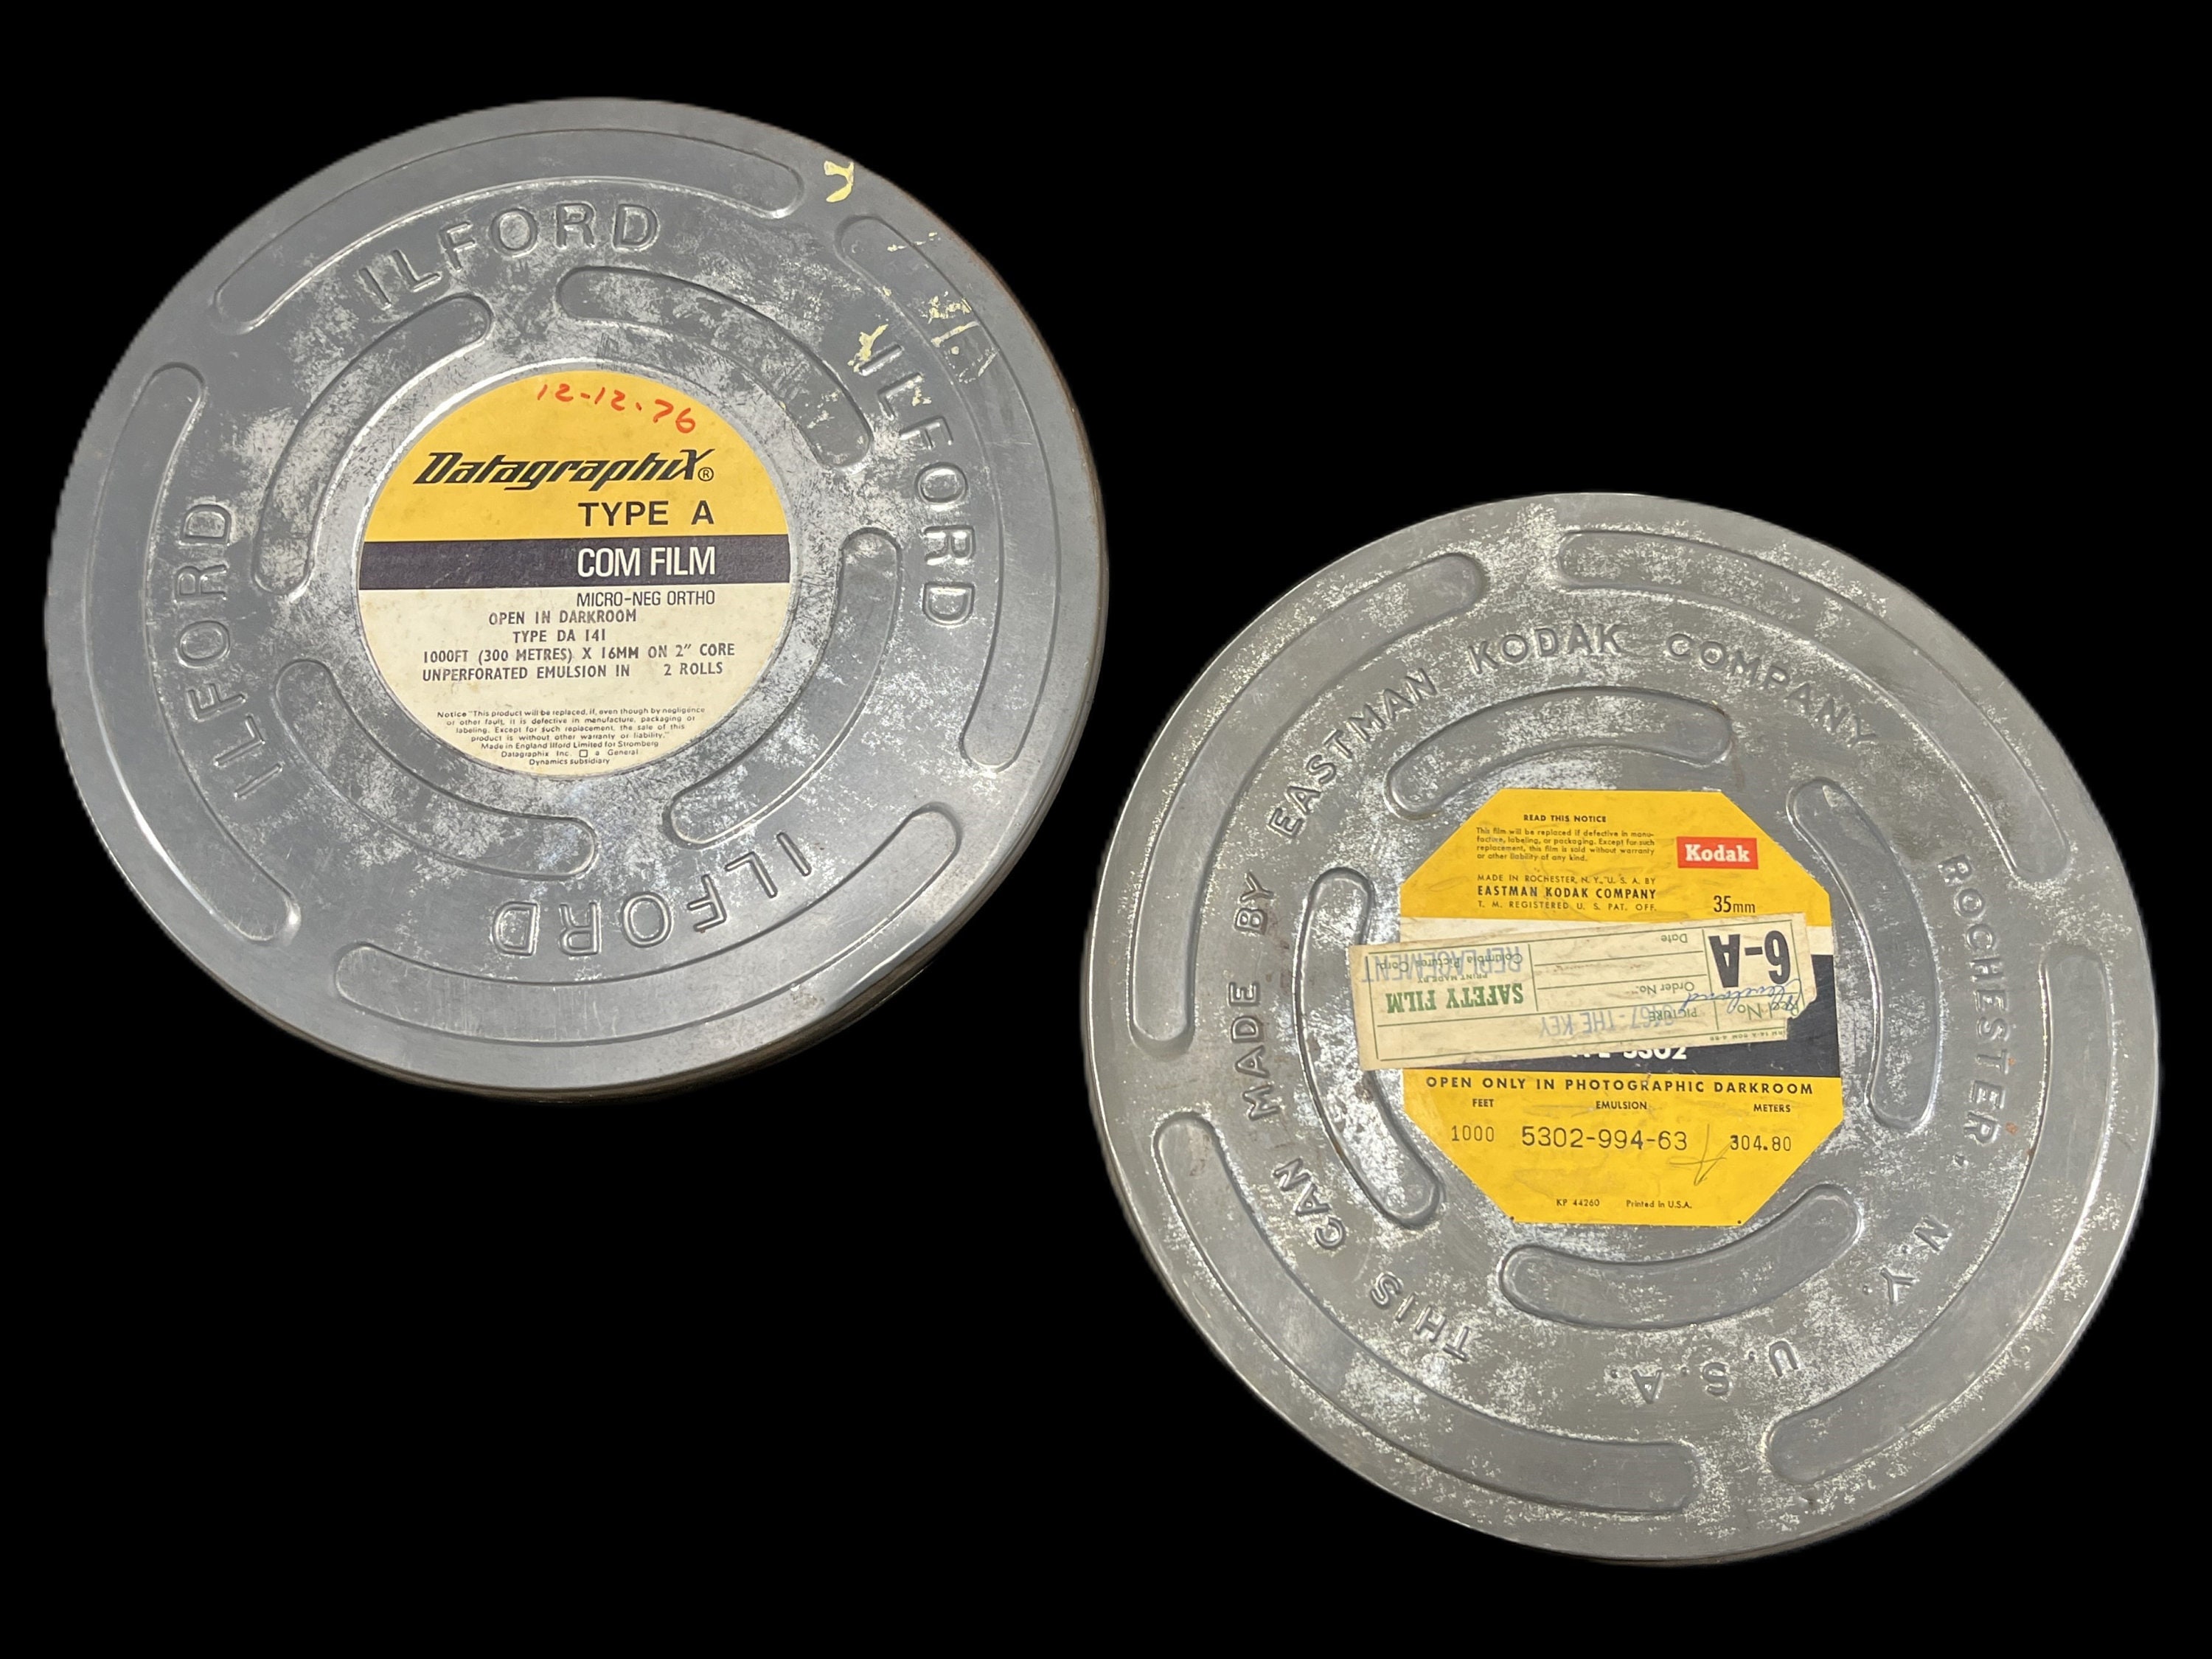 Classic Kodak 16mm Film Reel Canisters Set of 2 Film Storage Tins